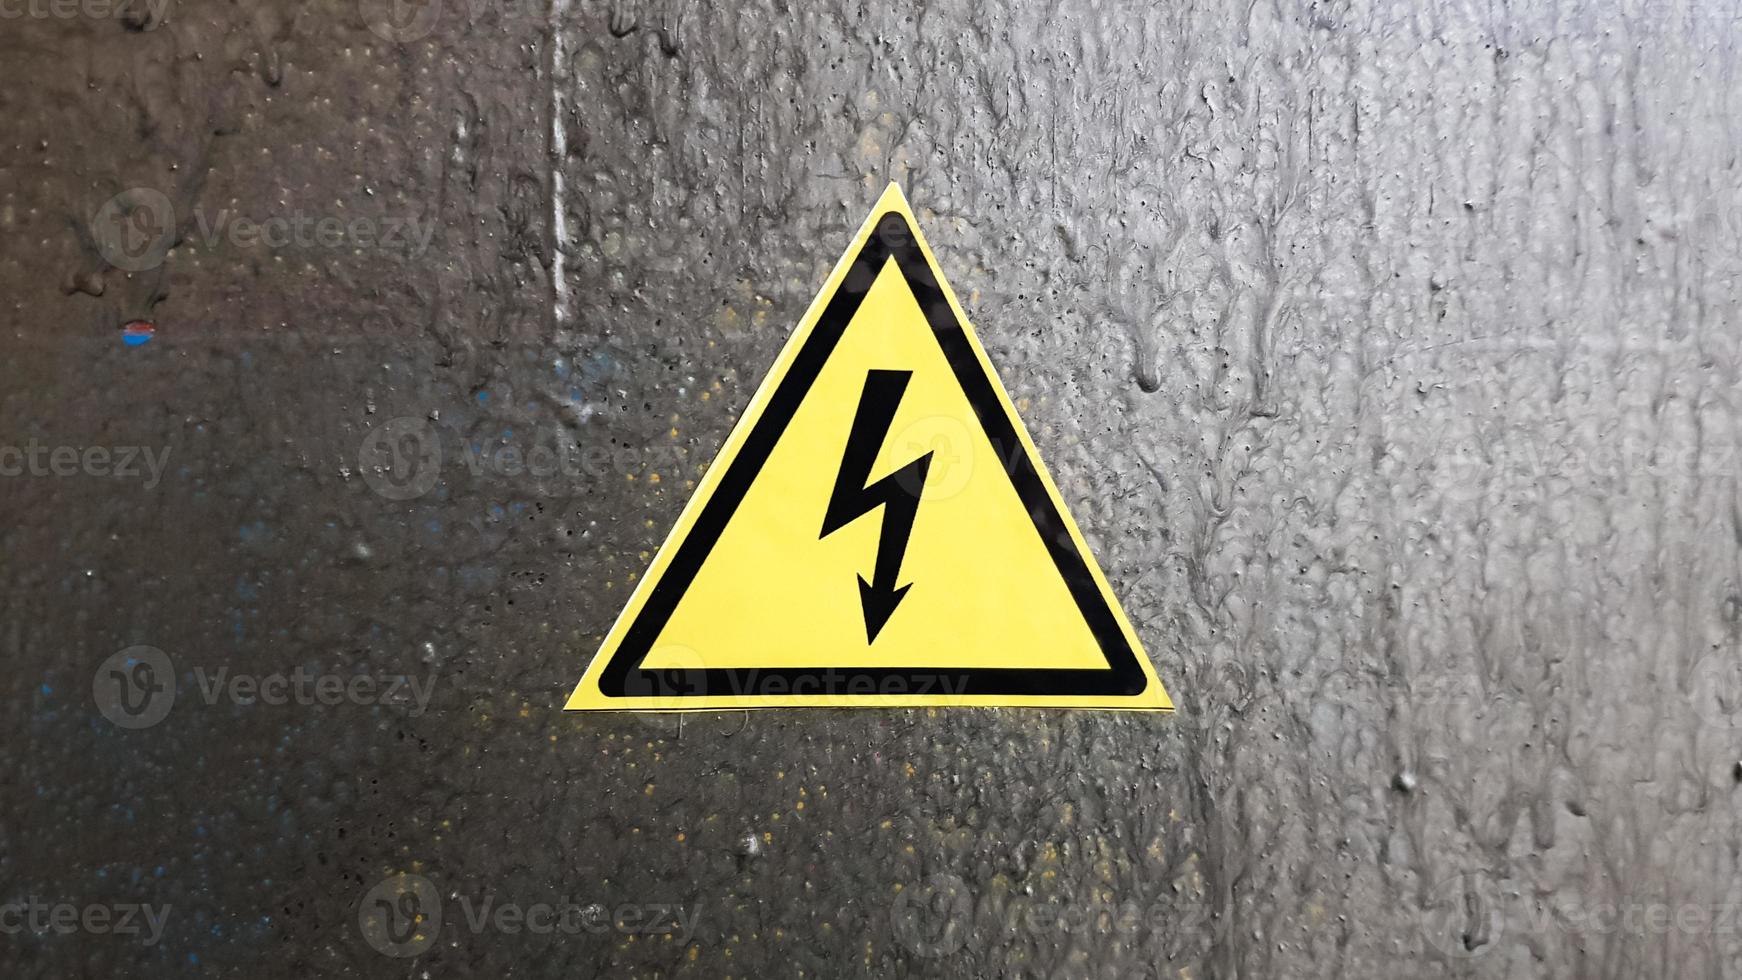 säkerhetsskylt gult och svart på en silvermetallbakgrund. högspänningsblixtar i en triangel varning försiktighet fara elektricitet dödsfall. foto